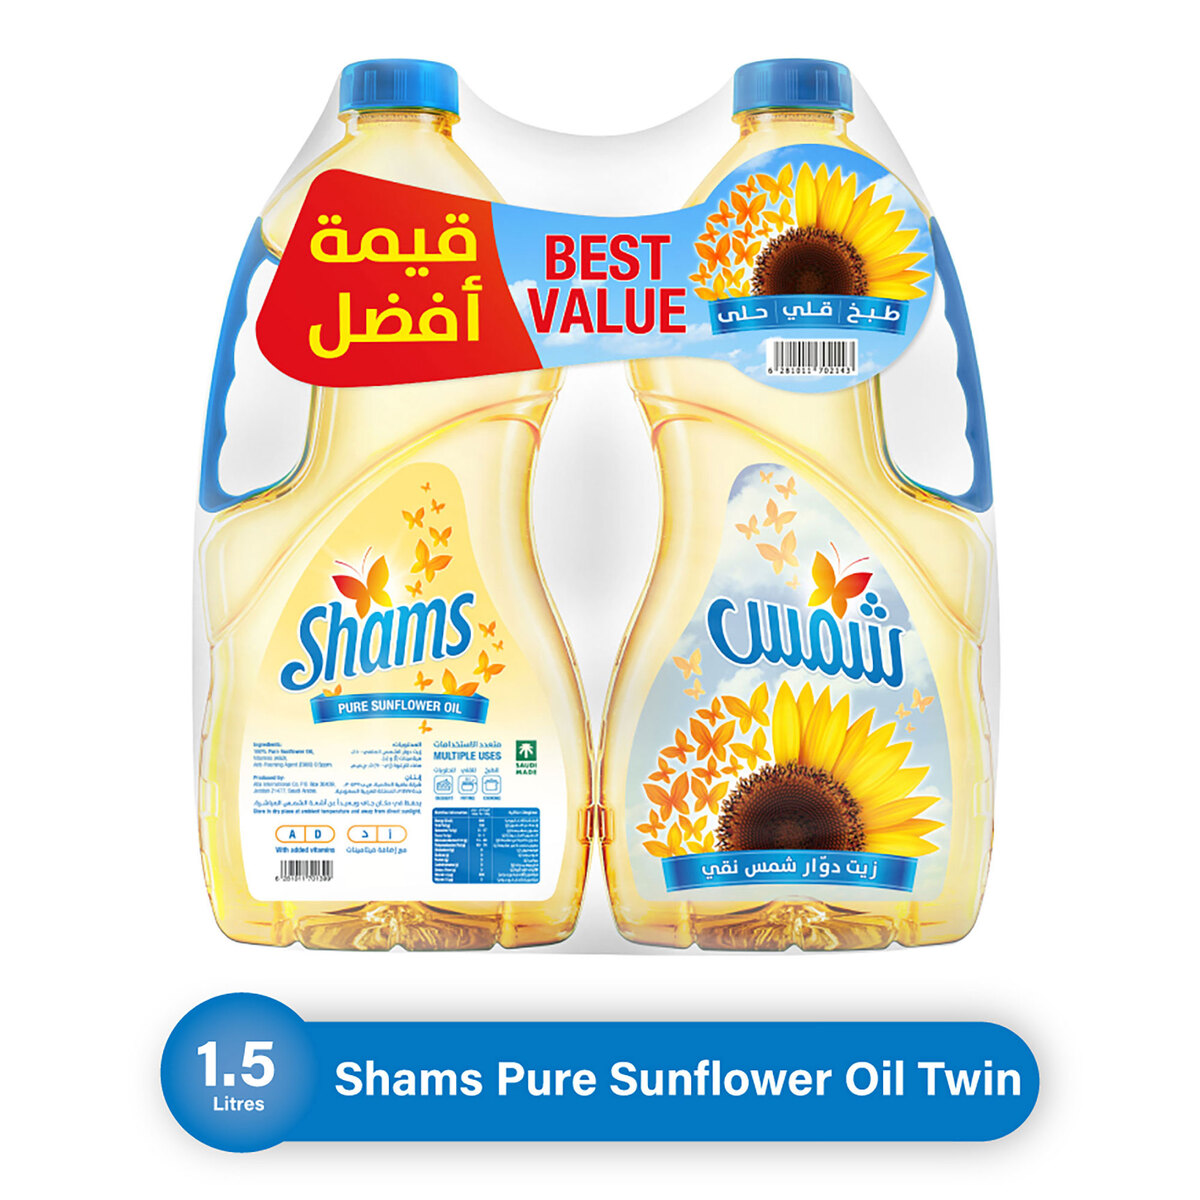 اشتري قم بشراء شمس زيت دوار الشمس النقي عرض توفير 2 × 1.5 لتر Online at Best Price من الموقع - من لولو هايبر ماركت Sunflower Oil في السعودية